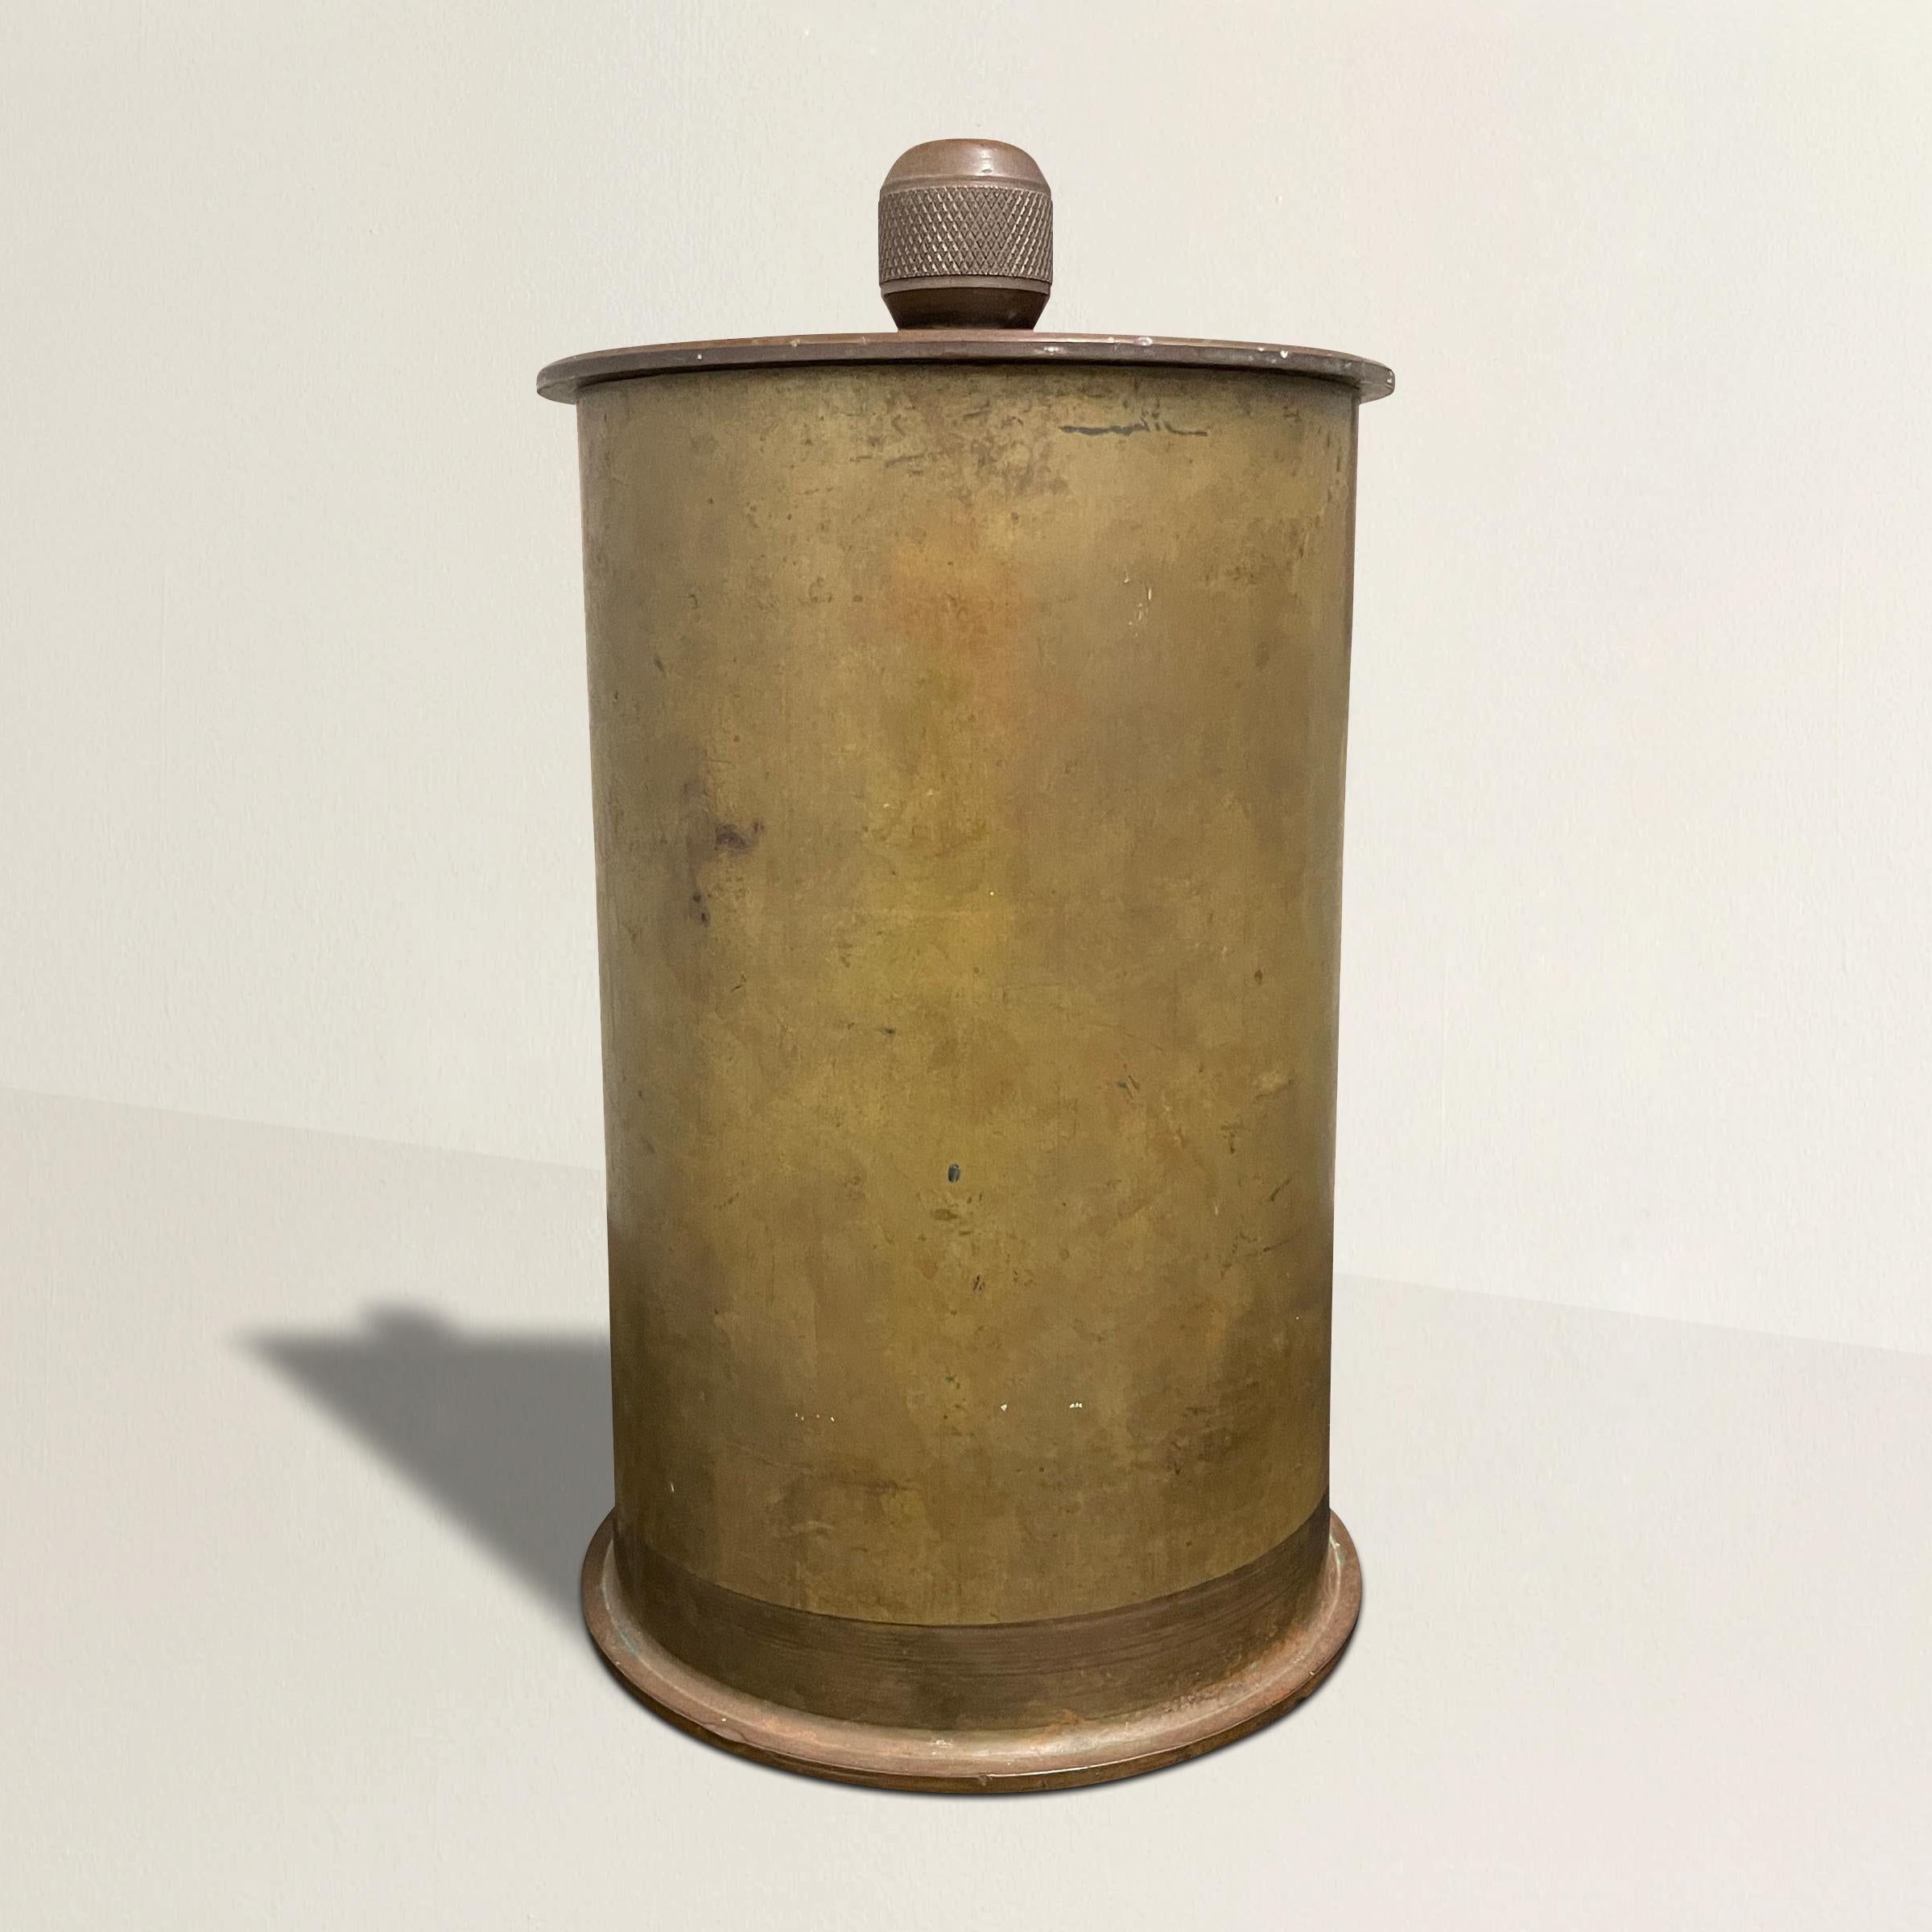 Une incroyable banque en bronze de l'art des tranchées américain du début du 20e siècle, fabriquée à partir d'une douille d'obus d'artillerie usagée, avec un couvercle doté d'un lourd bouton moleté.